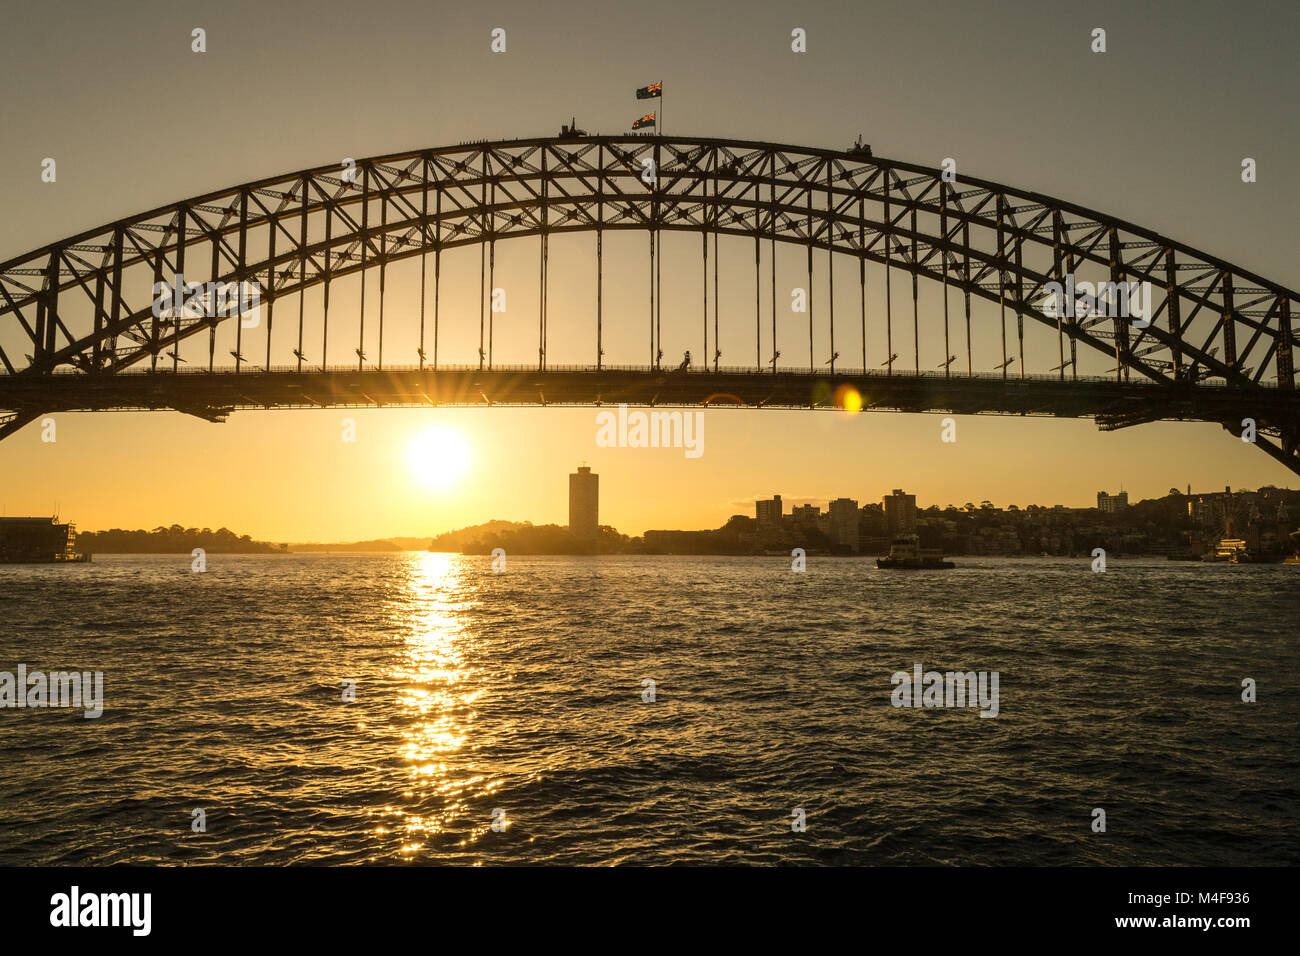 Iconic Sydney Harbour bridge Stock Photo